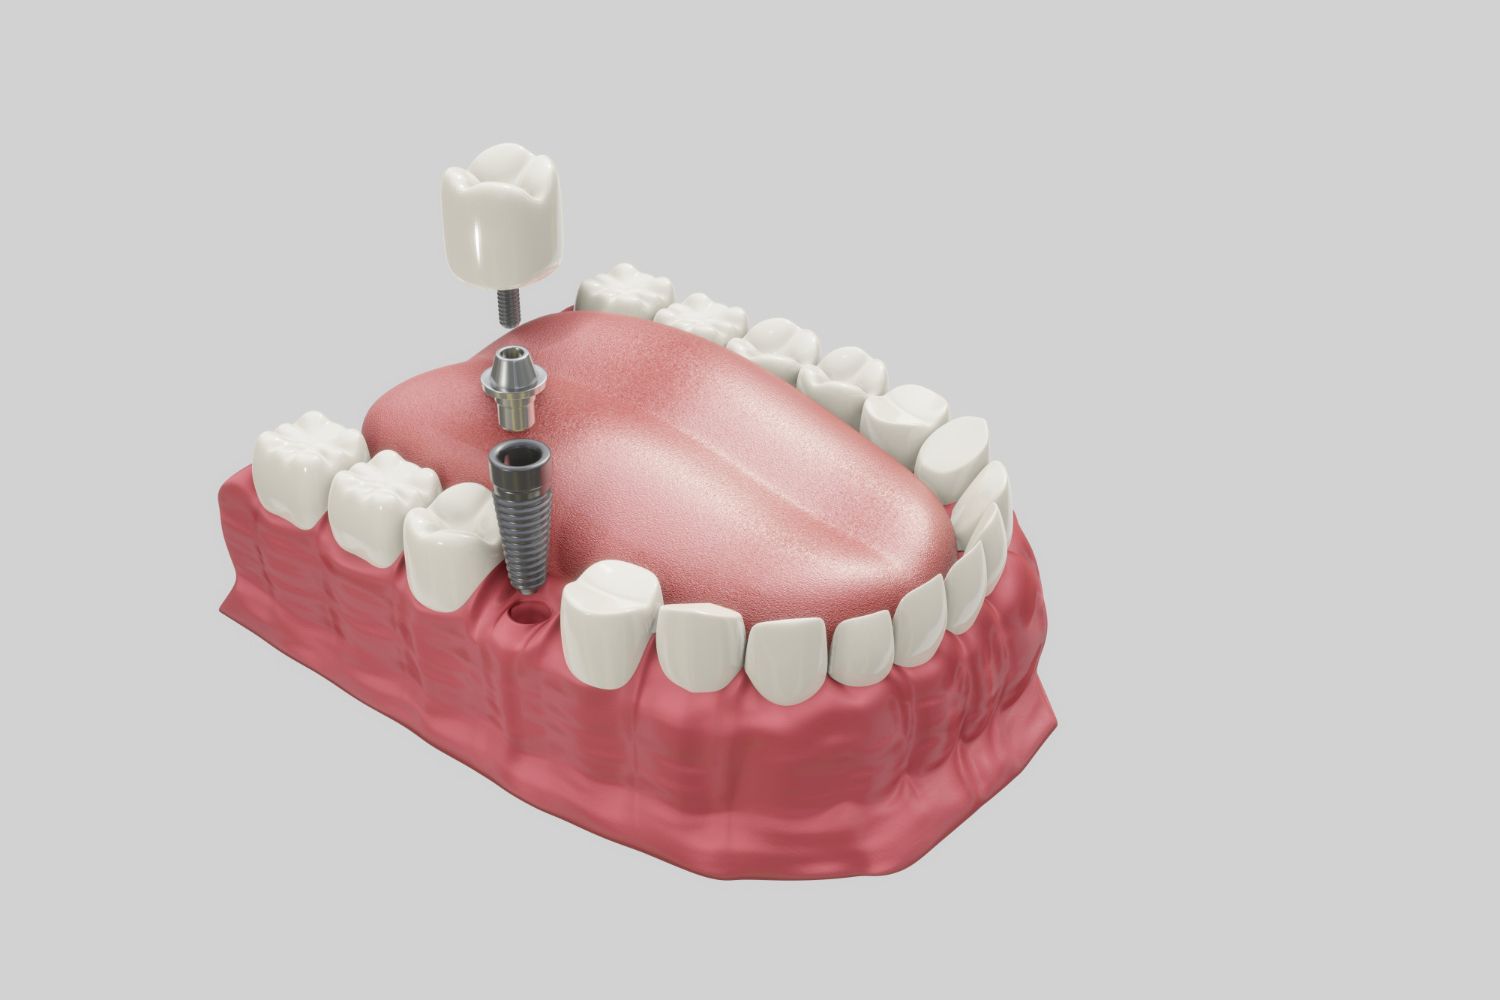 Debe colocarse el implante dental cuanto antes para evitar complicaciones